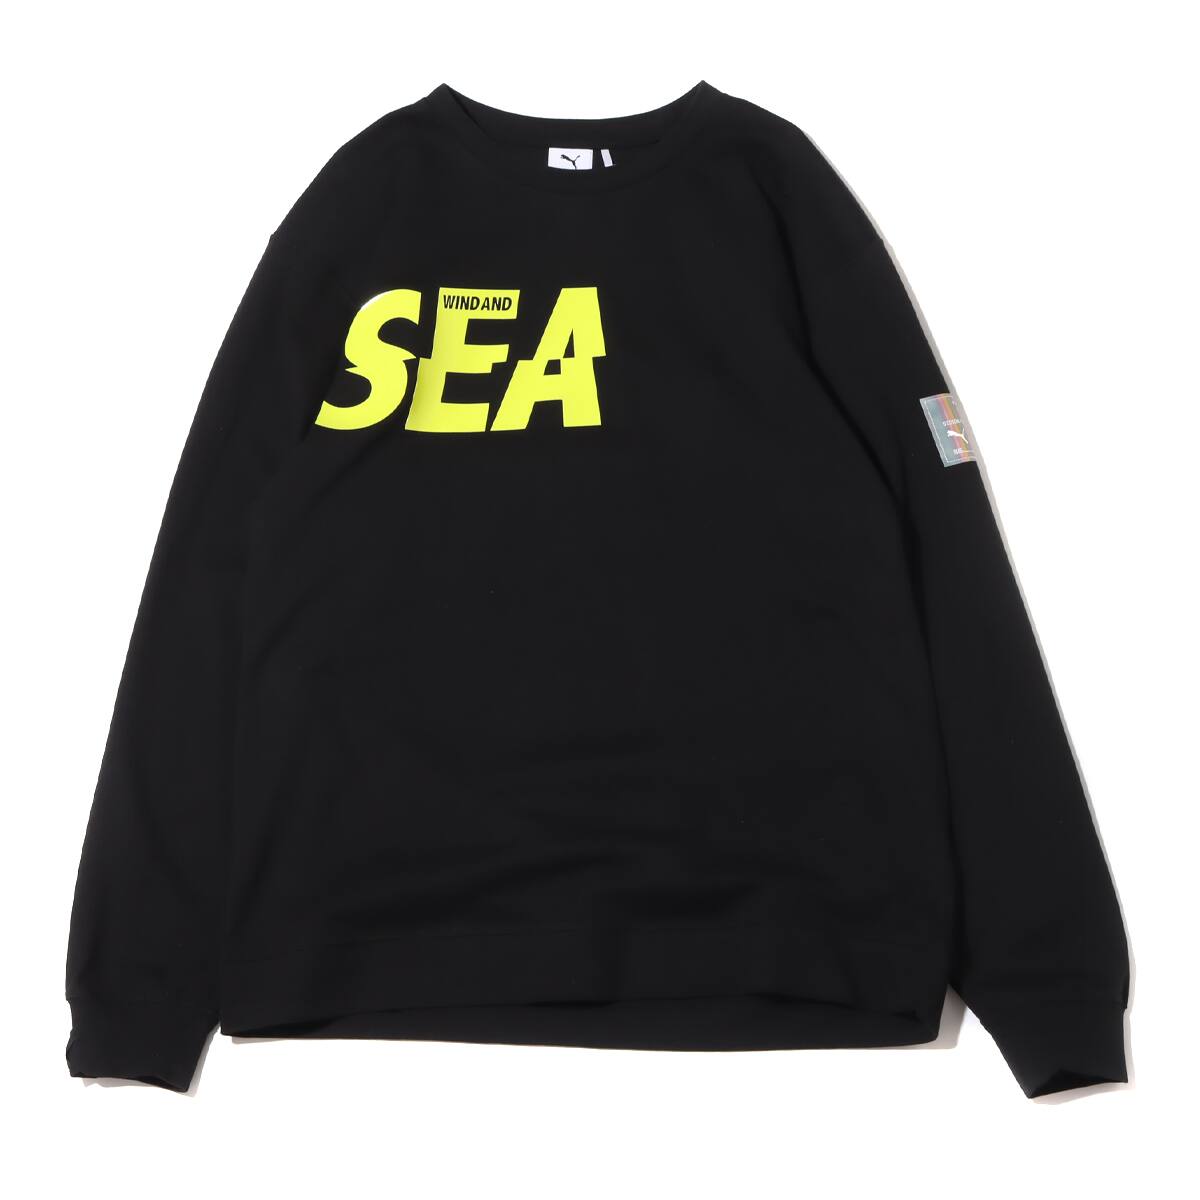 大阪店舗即日発送Mサイズ WIND AND SEA L/S T-SHIRT Black - Tシャツ